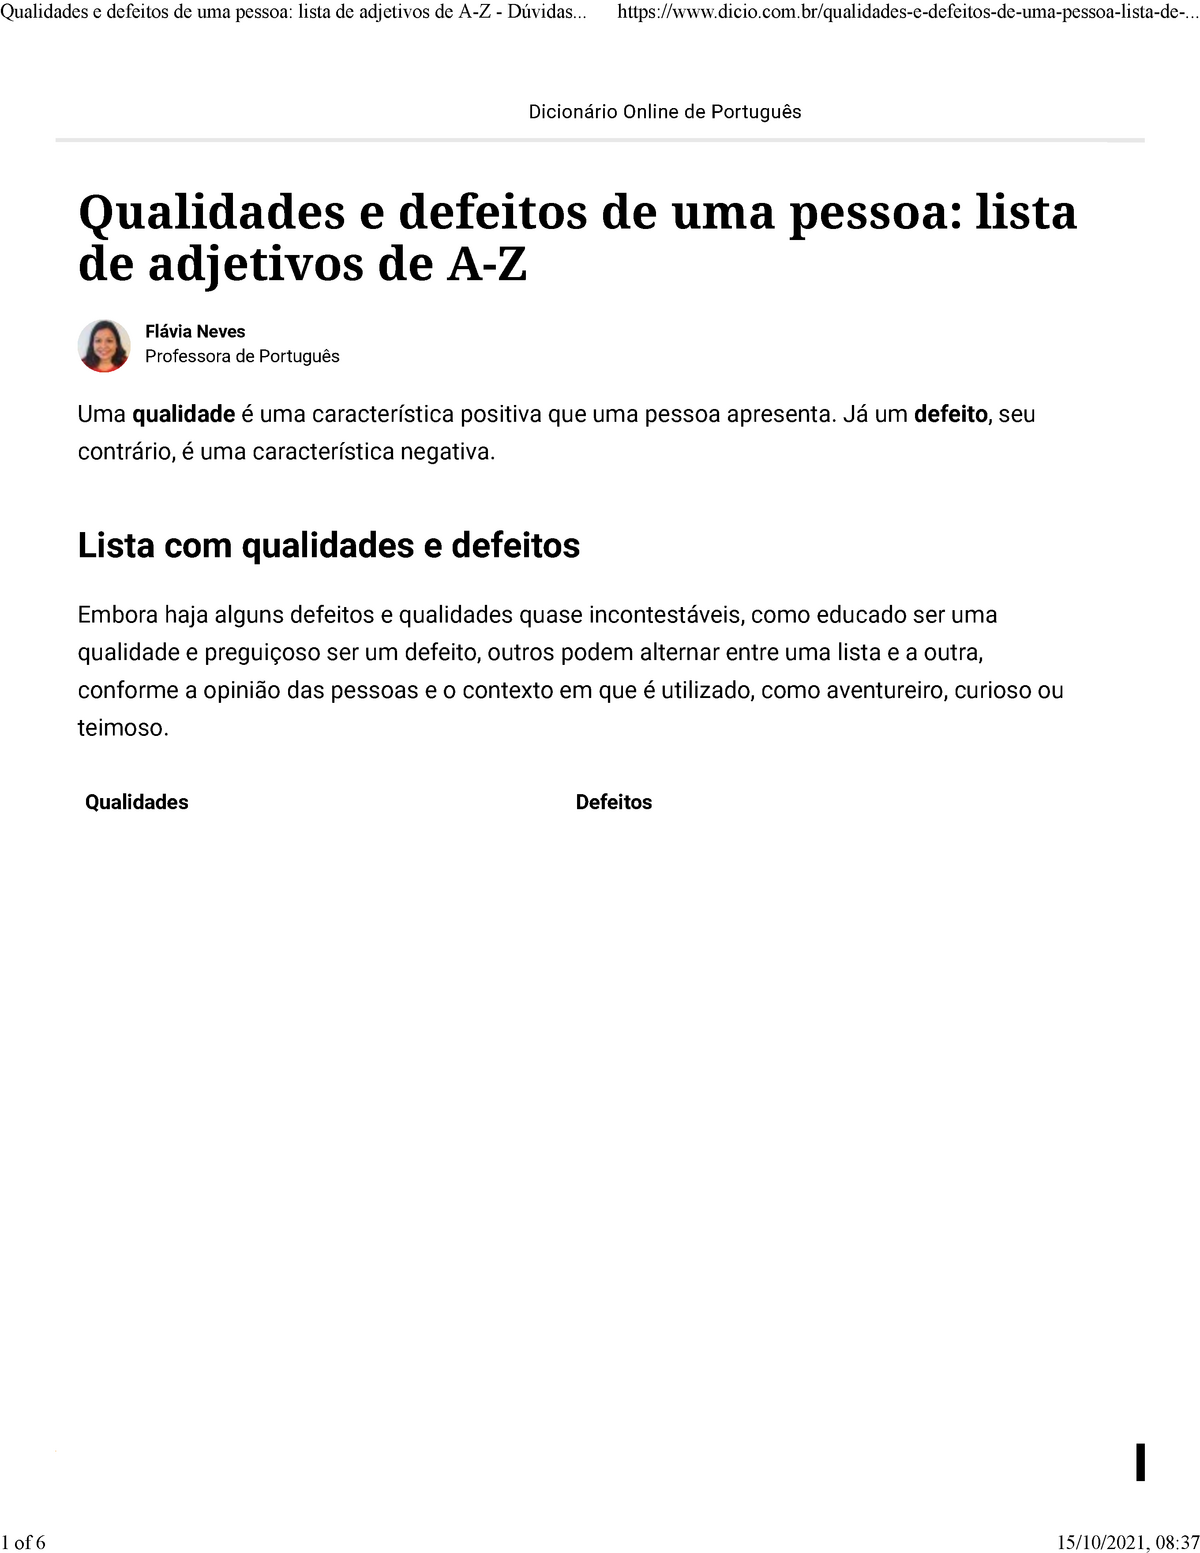 Simplificação - Dicio, Dicionário Online de Português